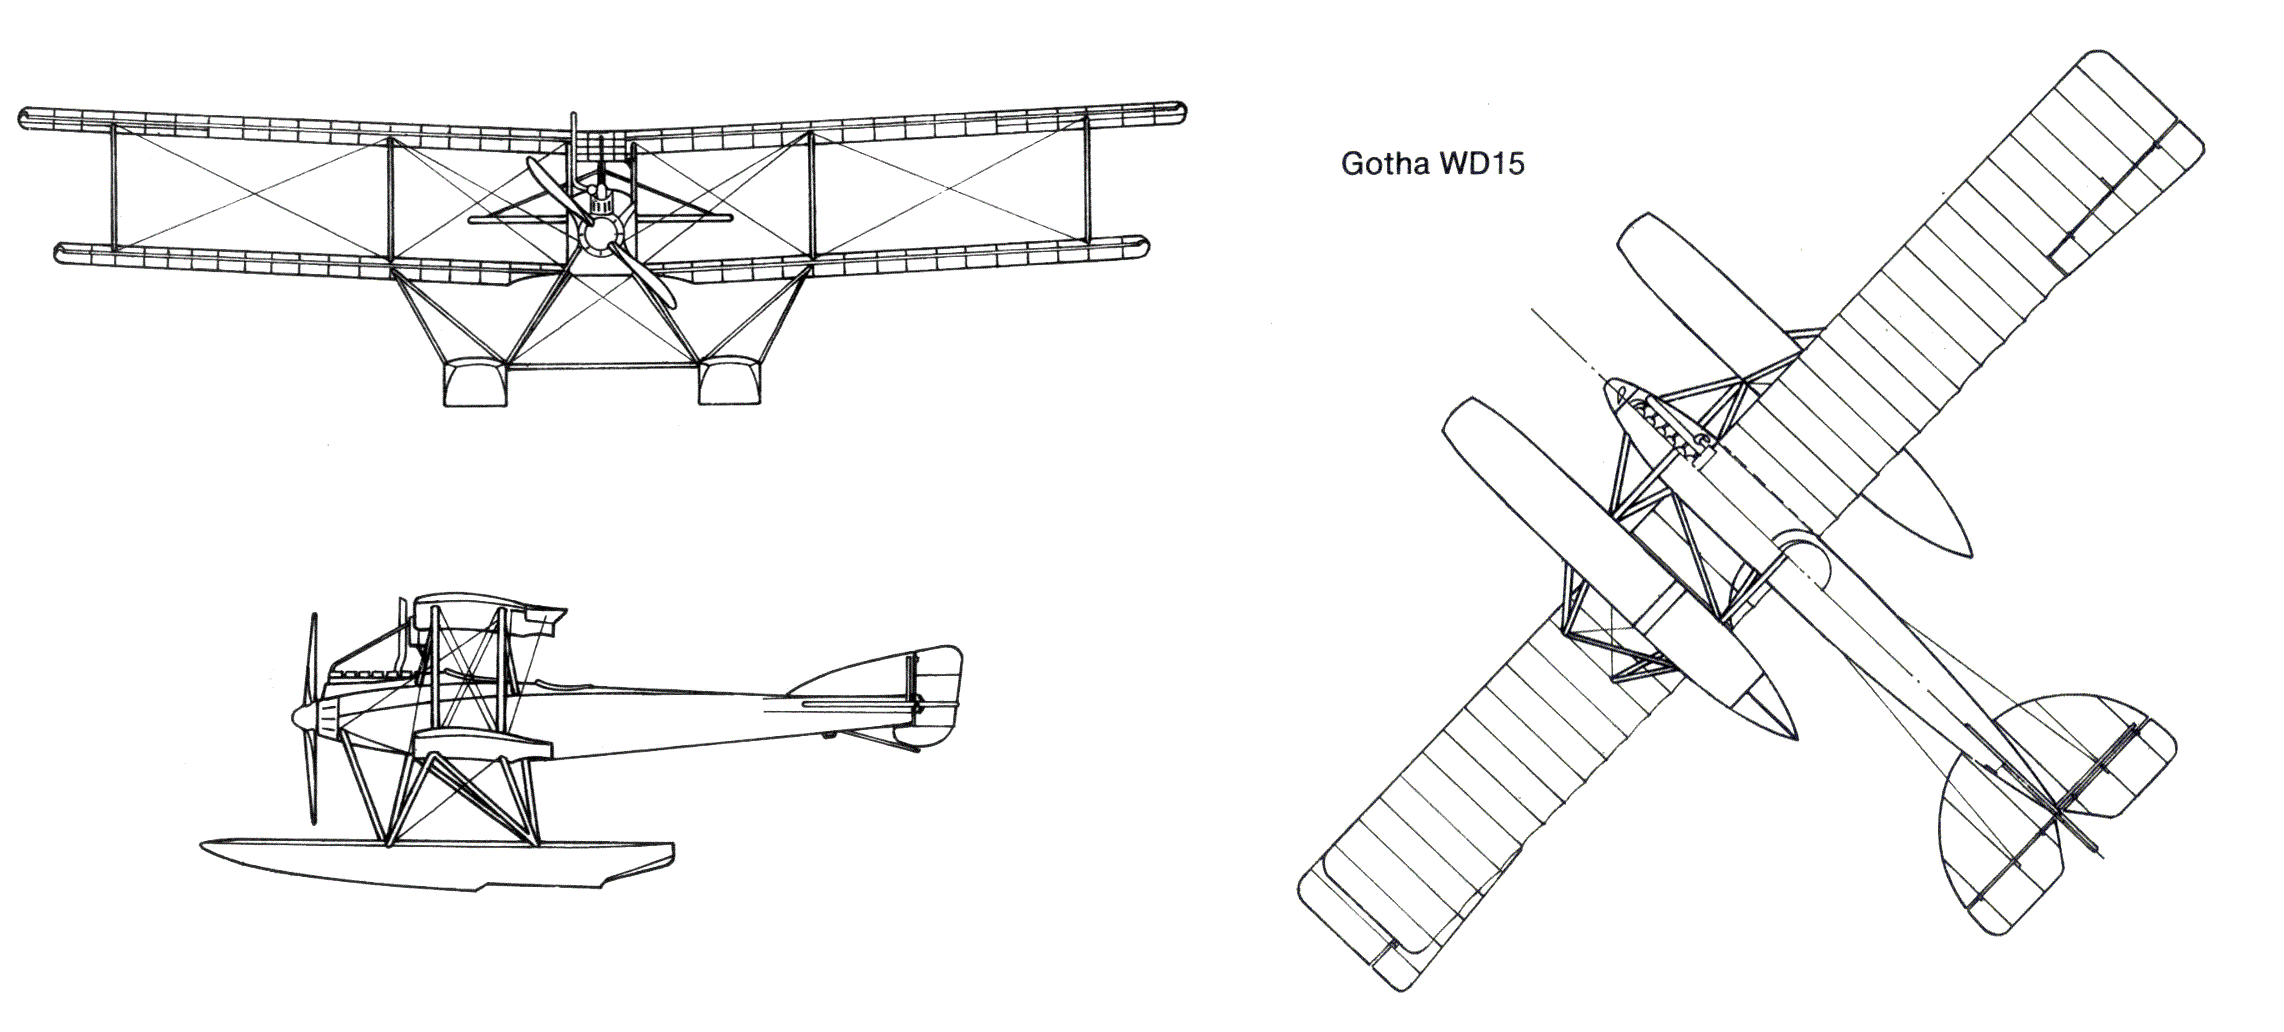 Gotha WD-15